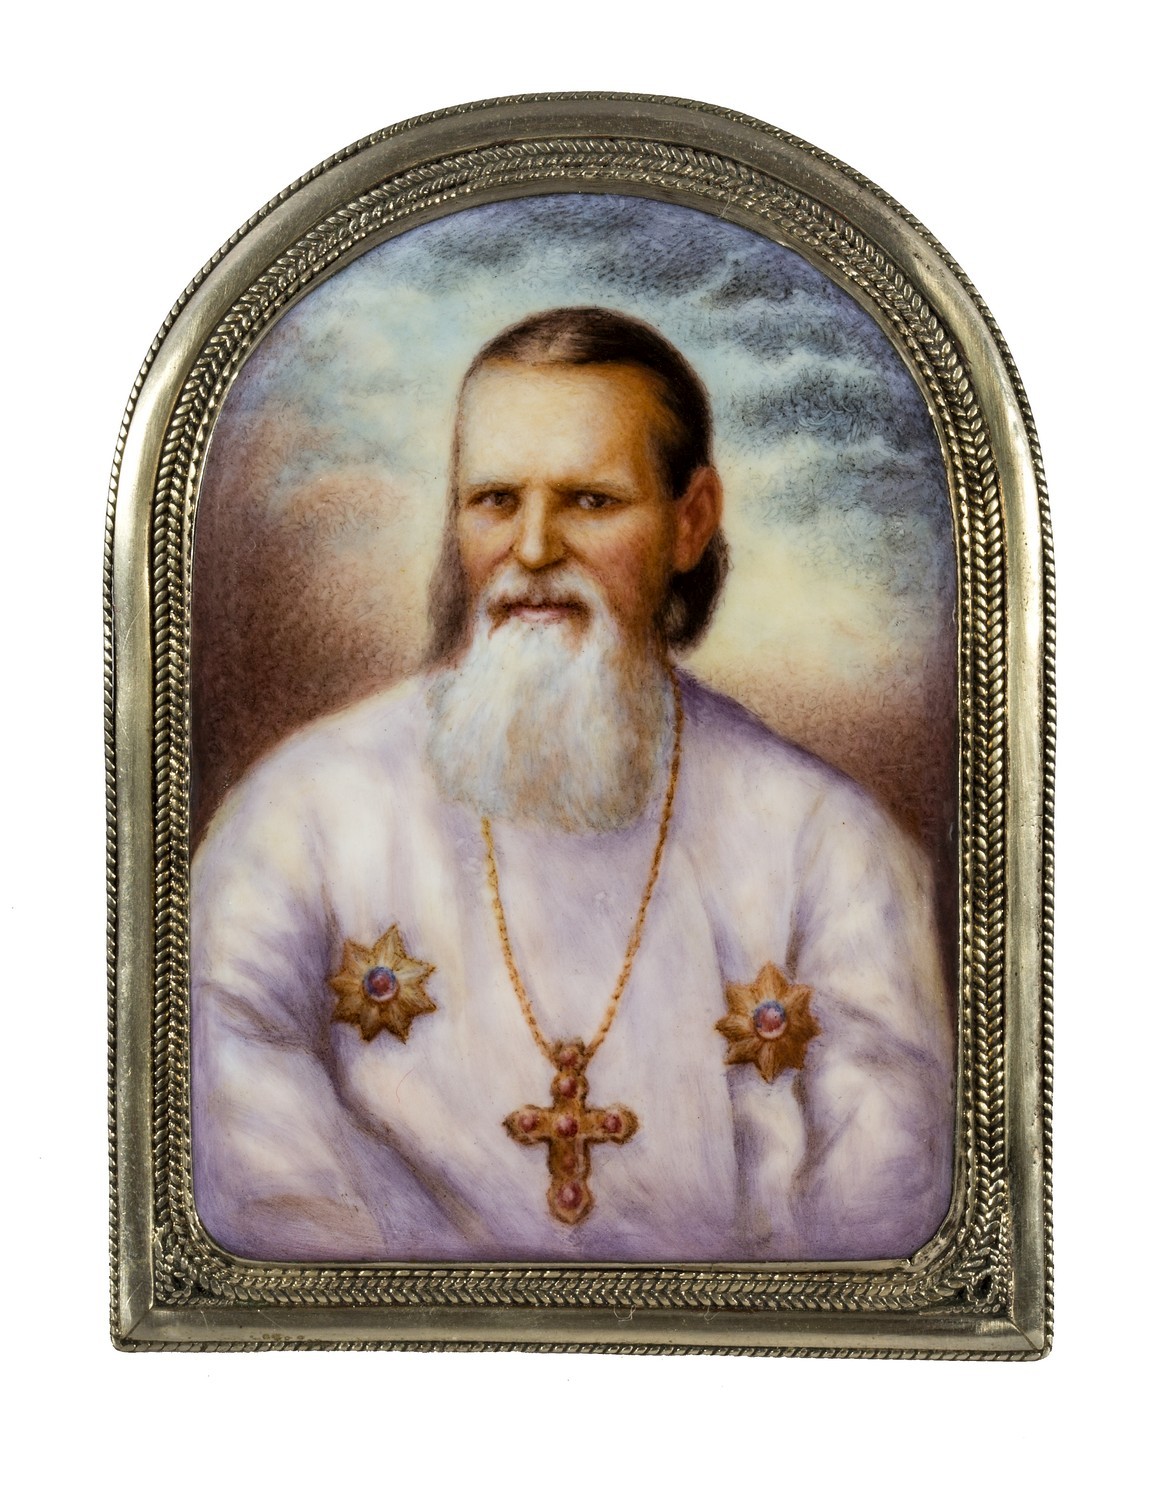 803. Б. М. Михайленко. Портрет святого праведного Иоанна Кронштадтского